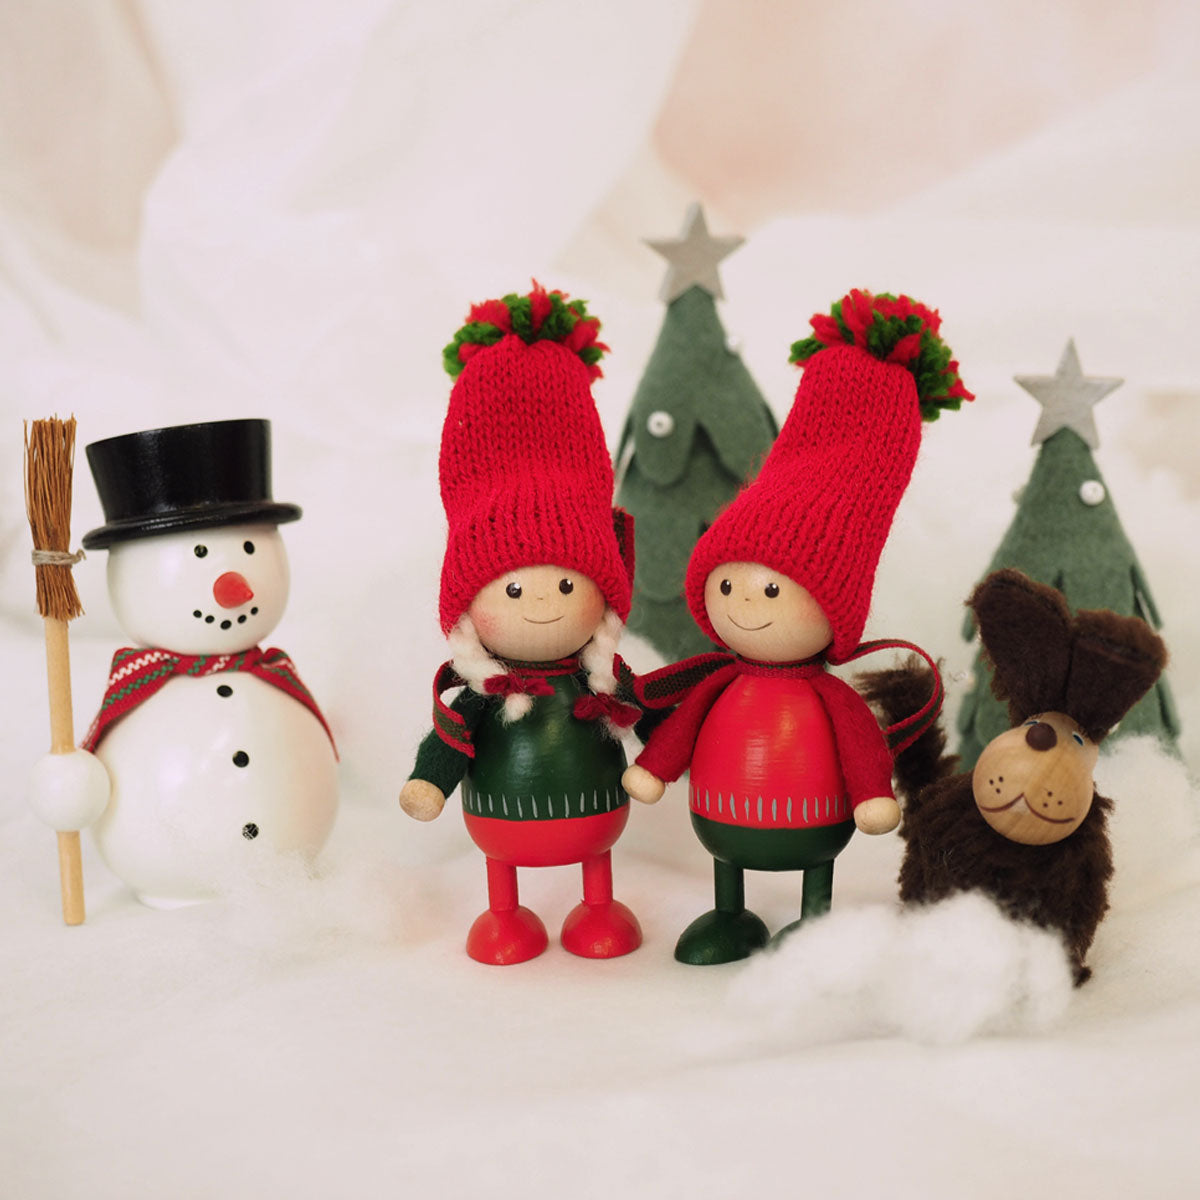 【2023新作】NORDIKA nisse ノルディカ ニッセ クリスマス 木製人形 ( 赤いセーターのふとっちょ男の子 / ツインズ )